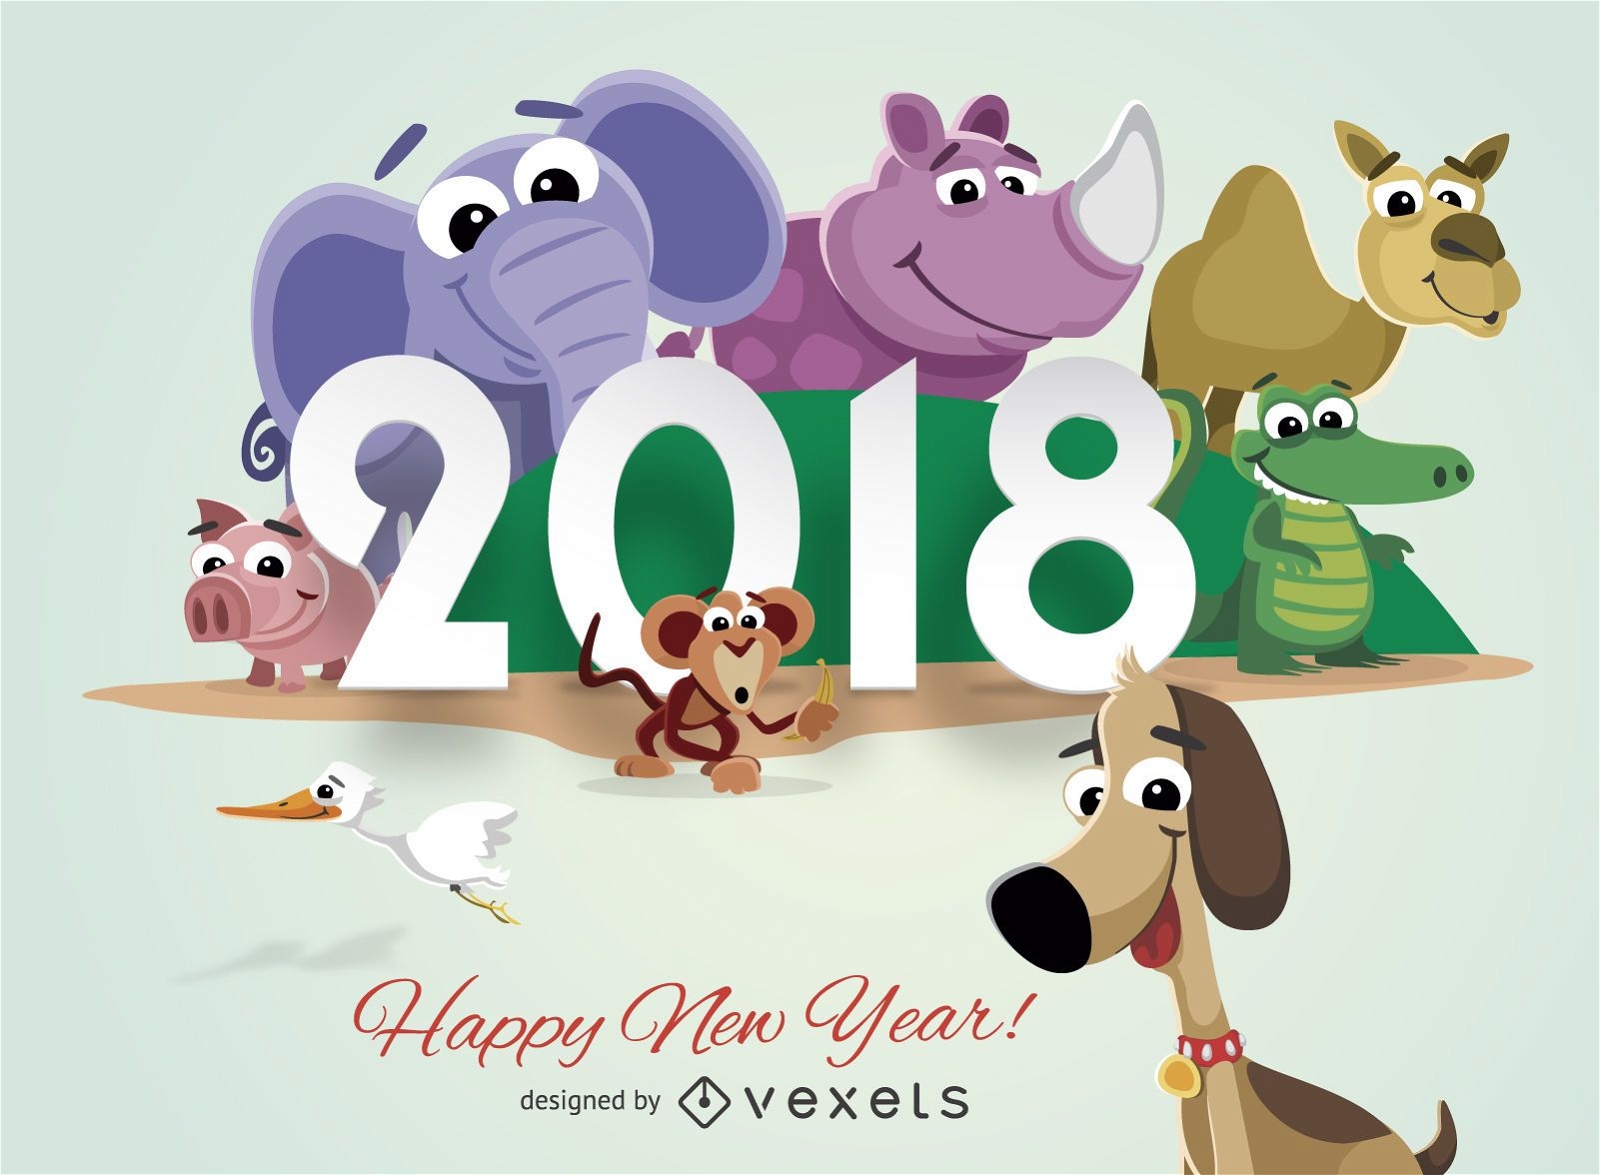 Animales de dibujos animados tarjeta de felicitaci?n de a?o nuevo 2018